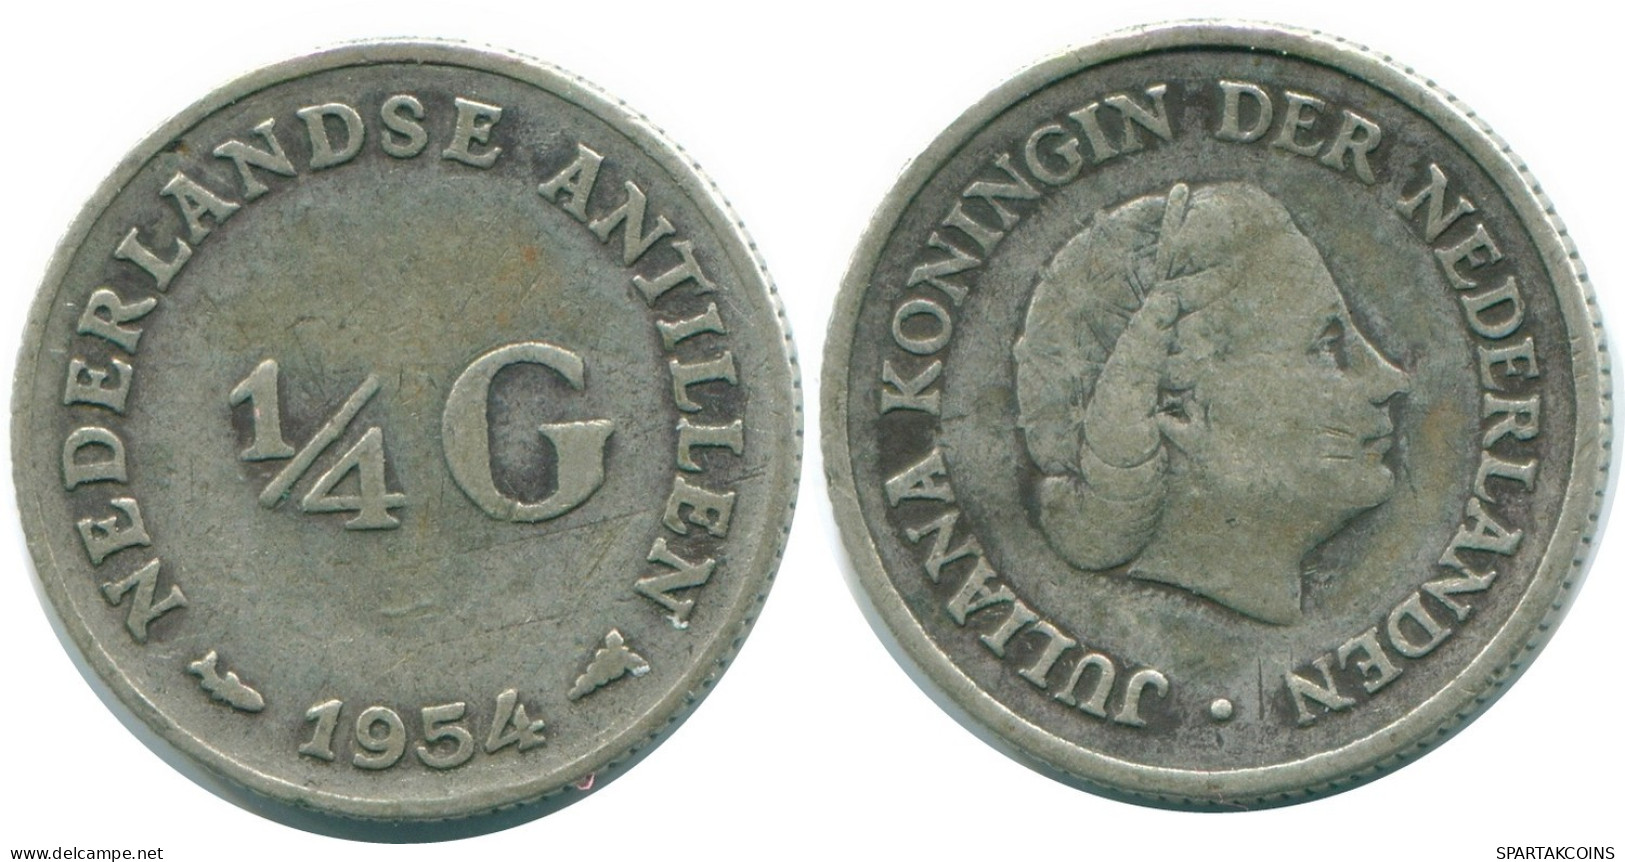 1/4 GULDEN 1954 NIEDERLÄNDISCHE ANTILLEN SILBER Koloniale Münze #NL10897.4.D.A - Antille Olandesi